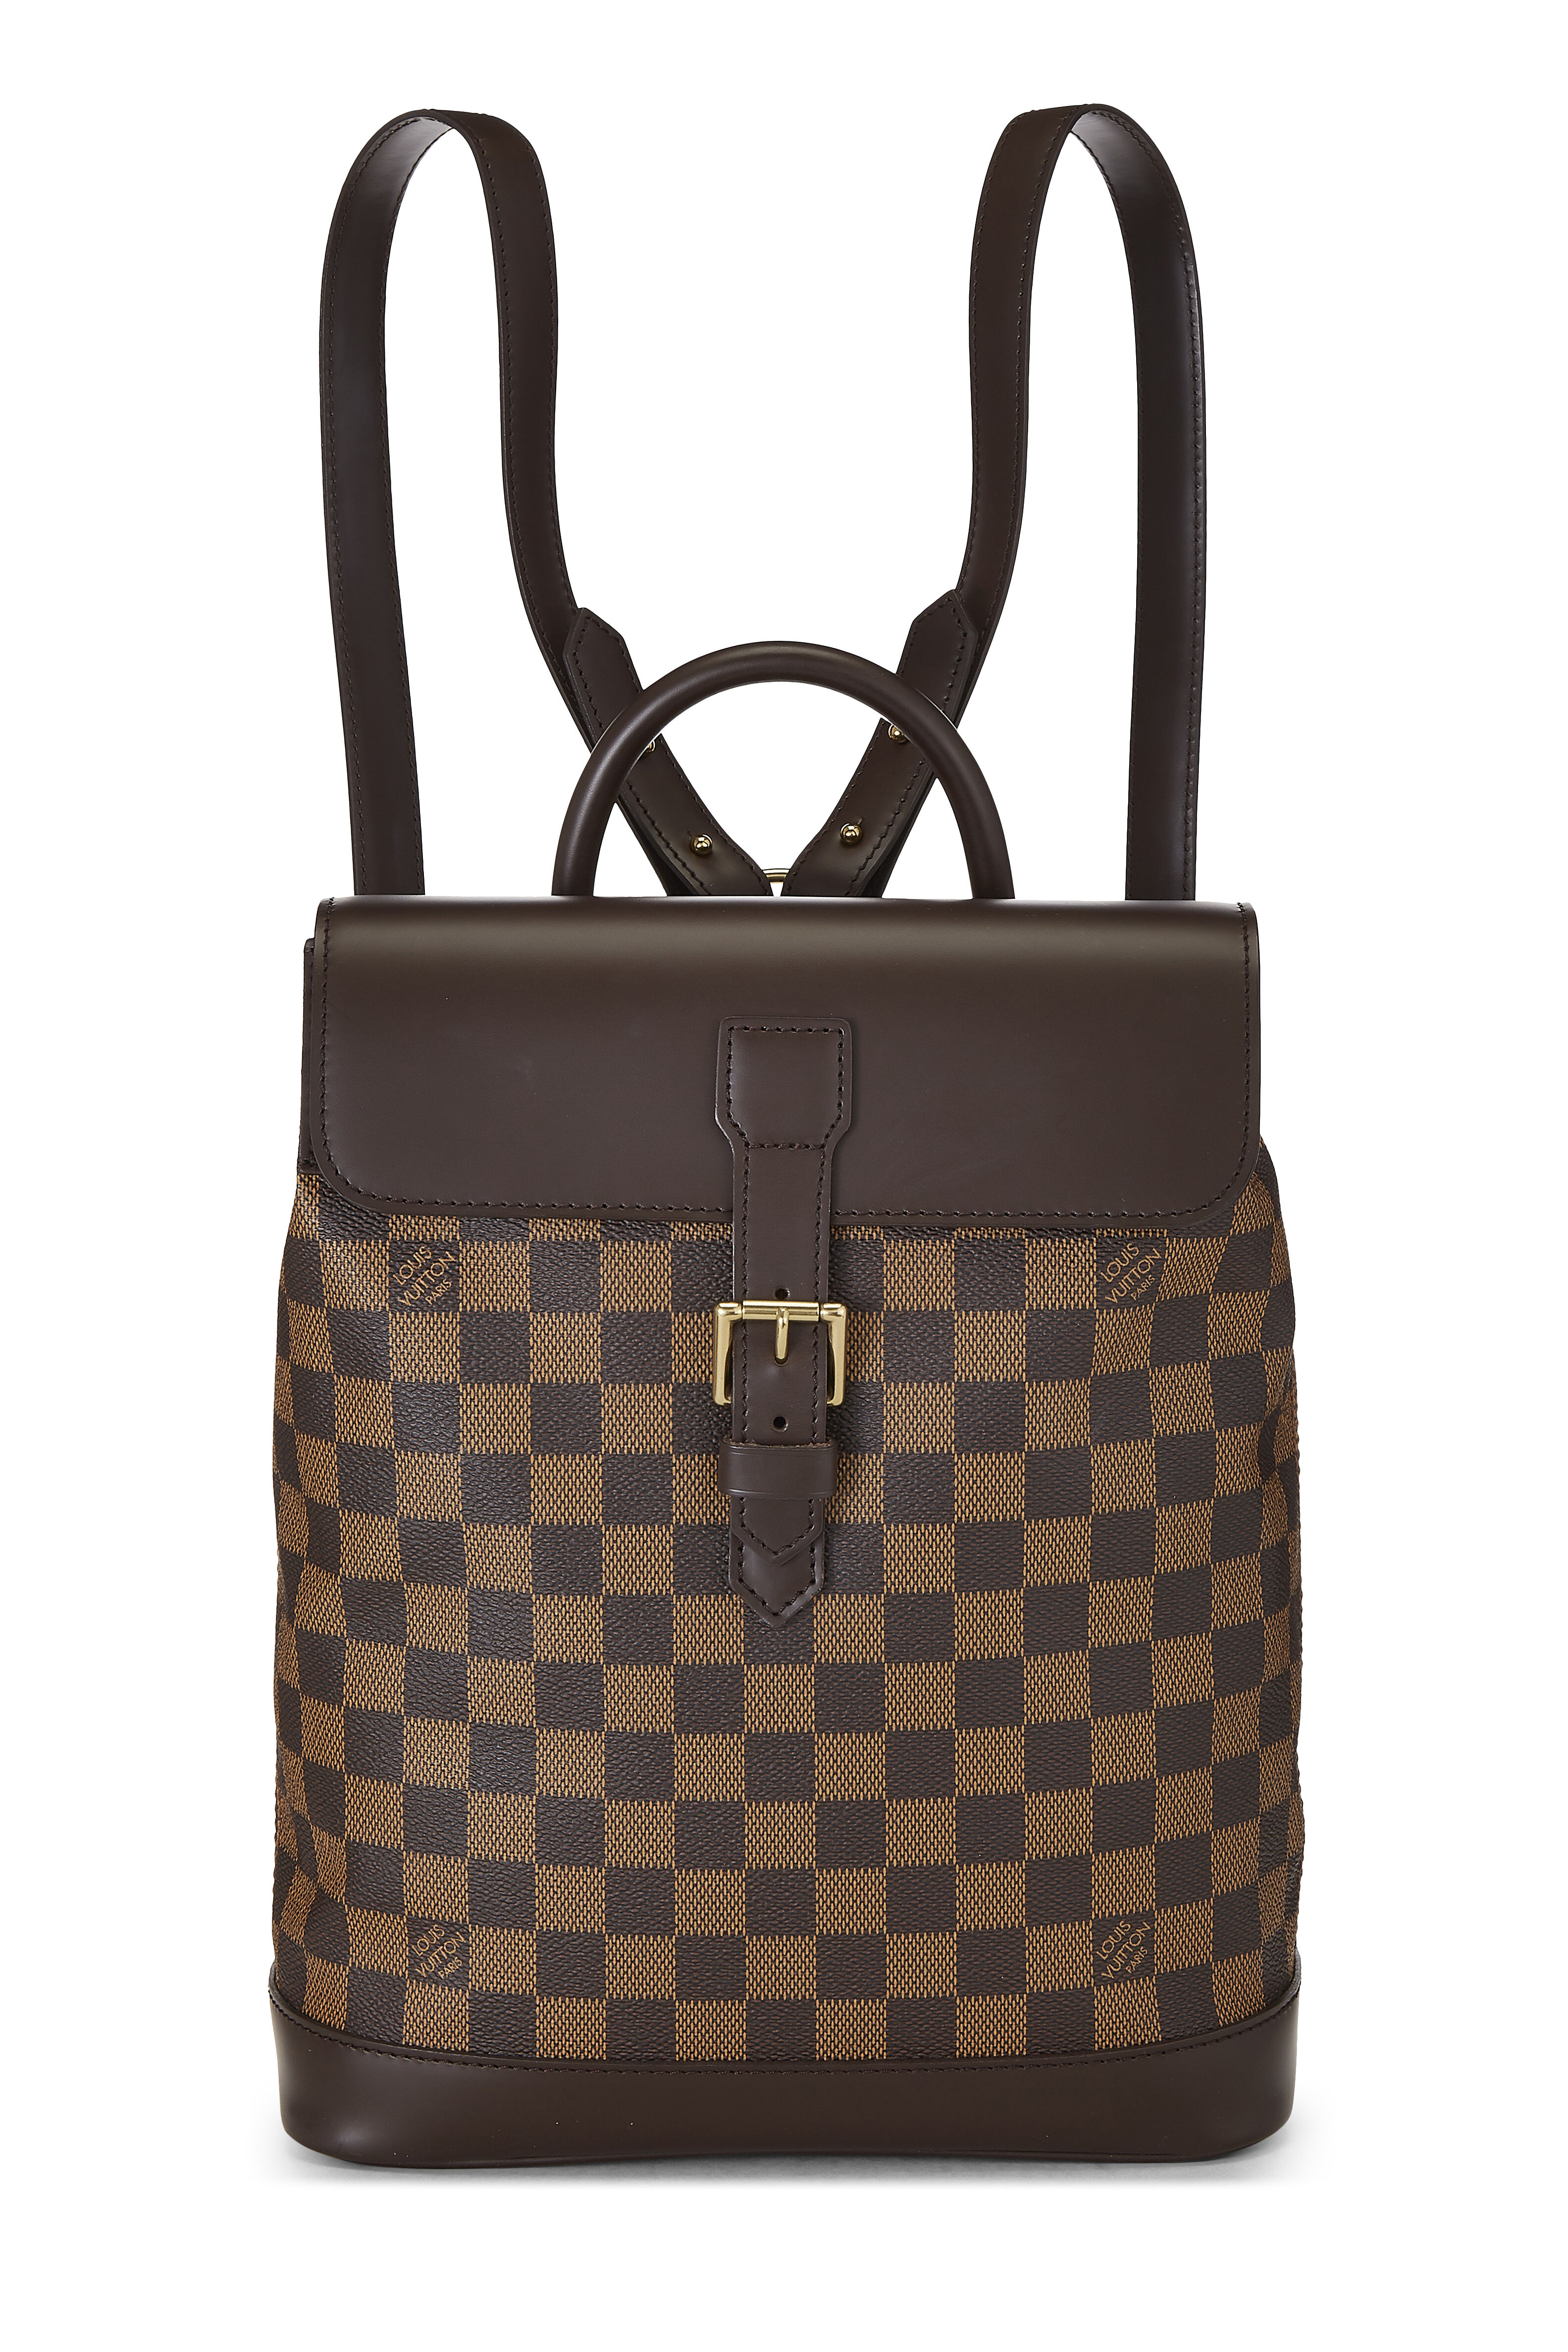 Louis Vuitton Damier Ebene Soho Backpack 101lv1 For Sale at